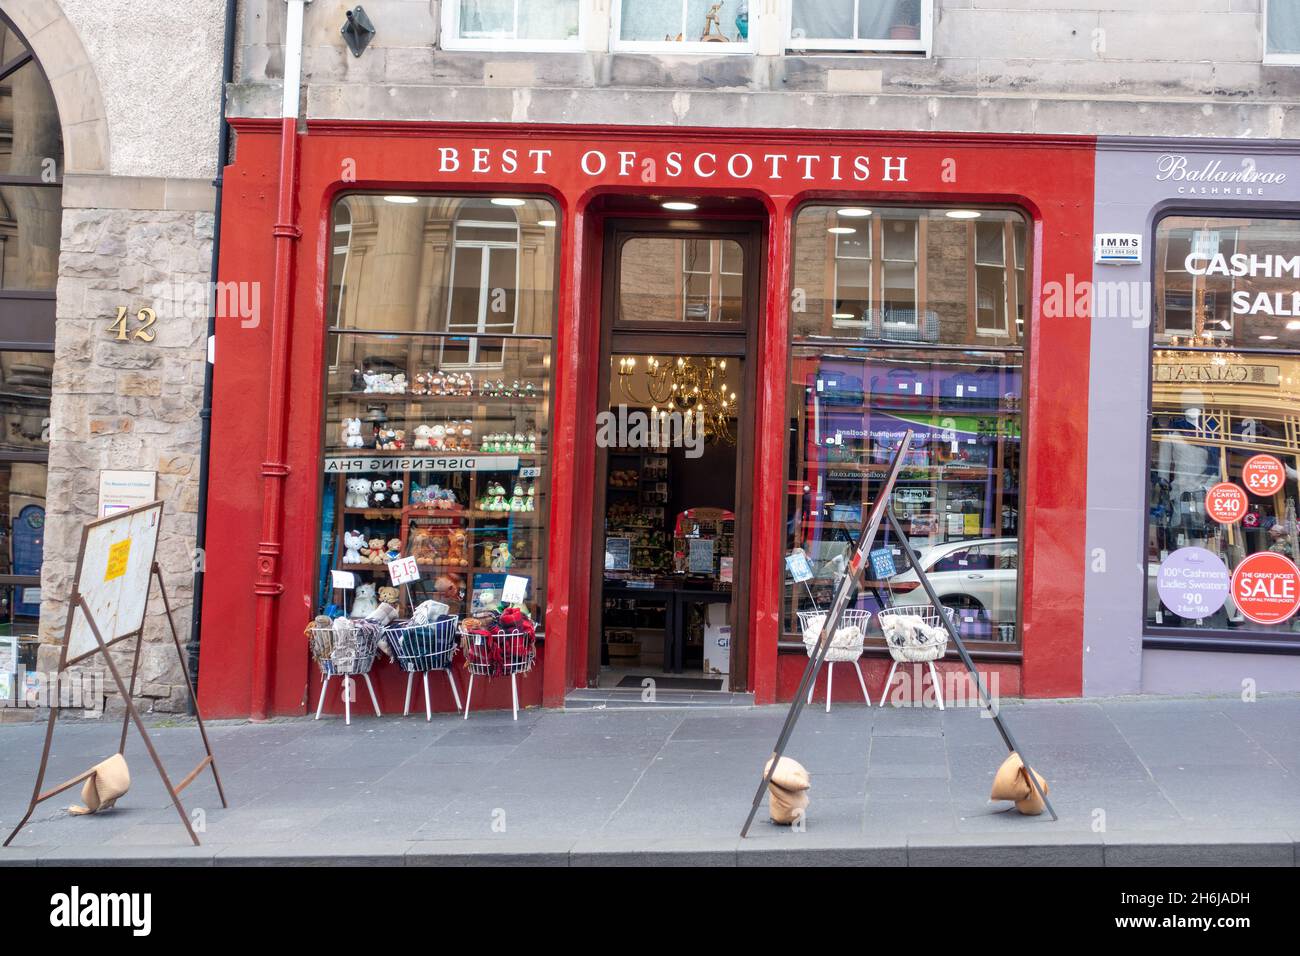 Boutique de cadeaux Best of Scottish, façade extérieure à Édimbourg, Écosse Banque D'Images